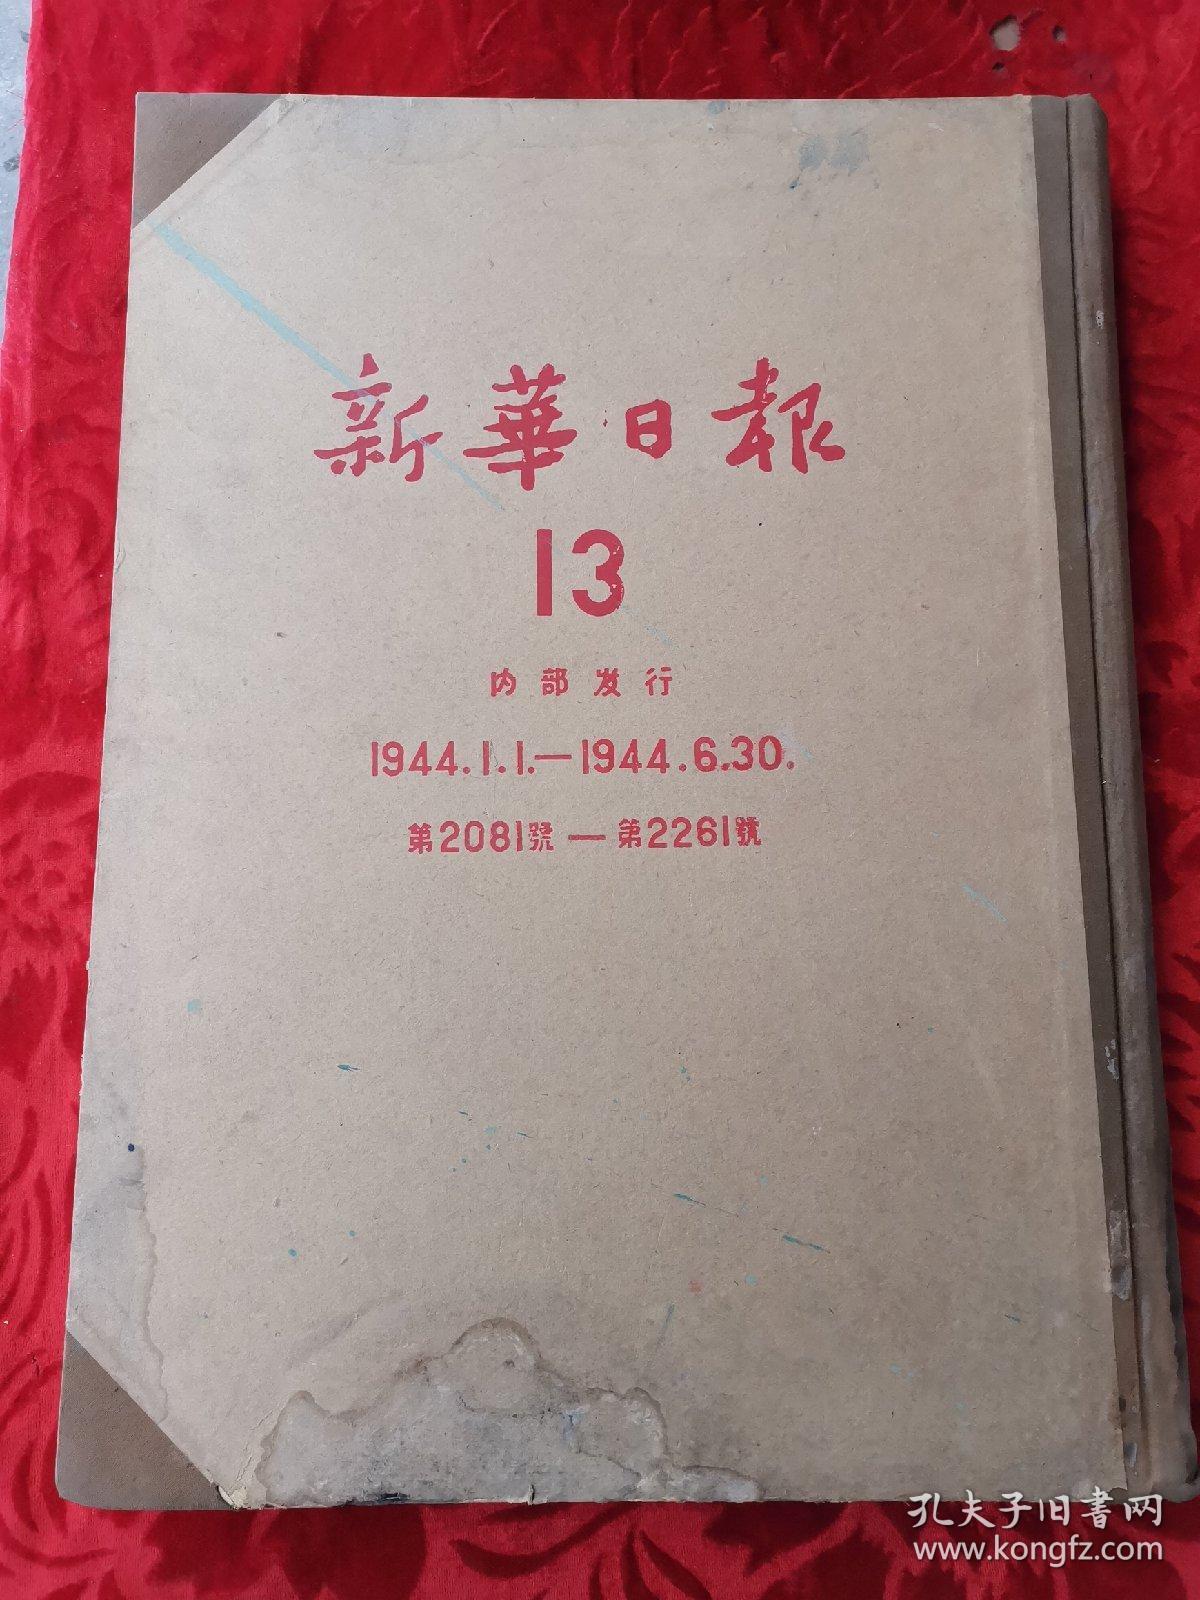 新华日报 【13】 1944年1.1--1944.6.30